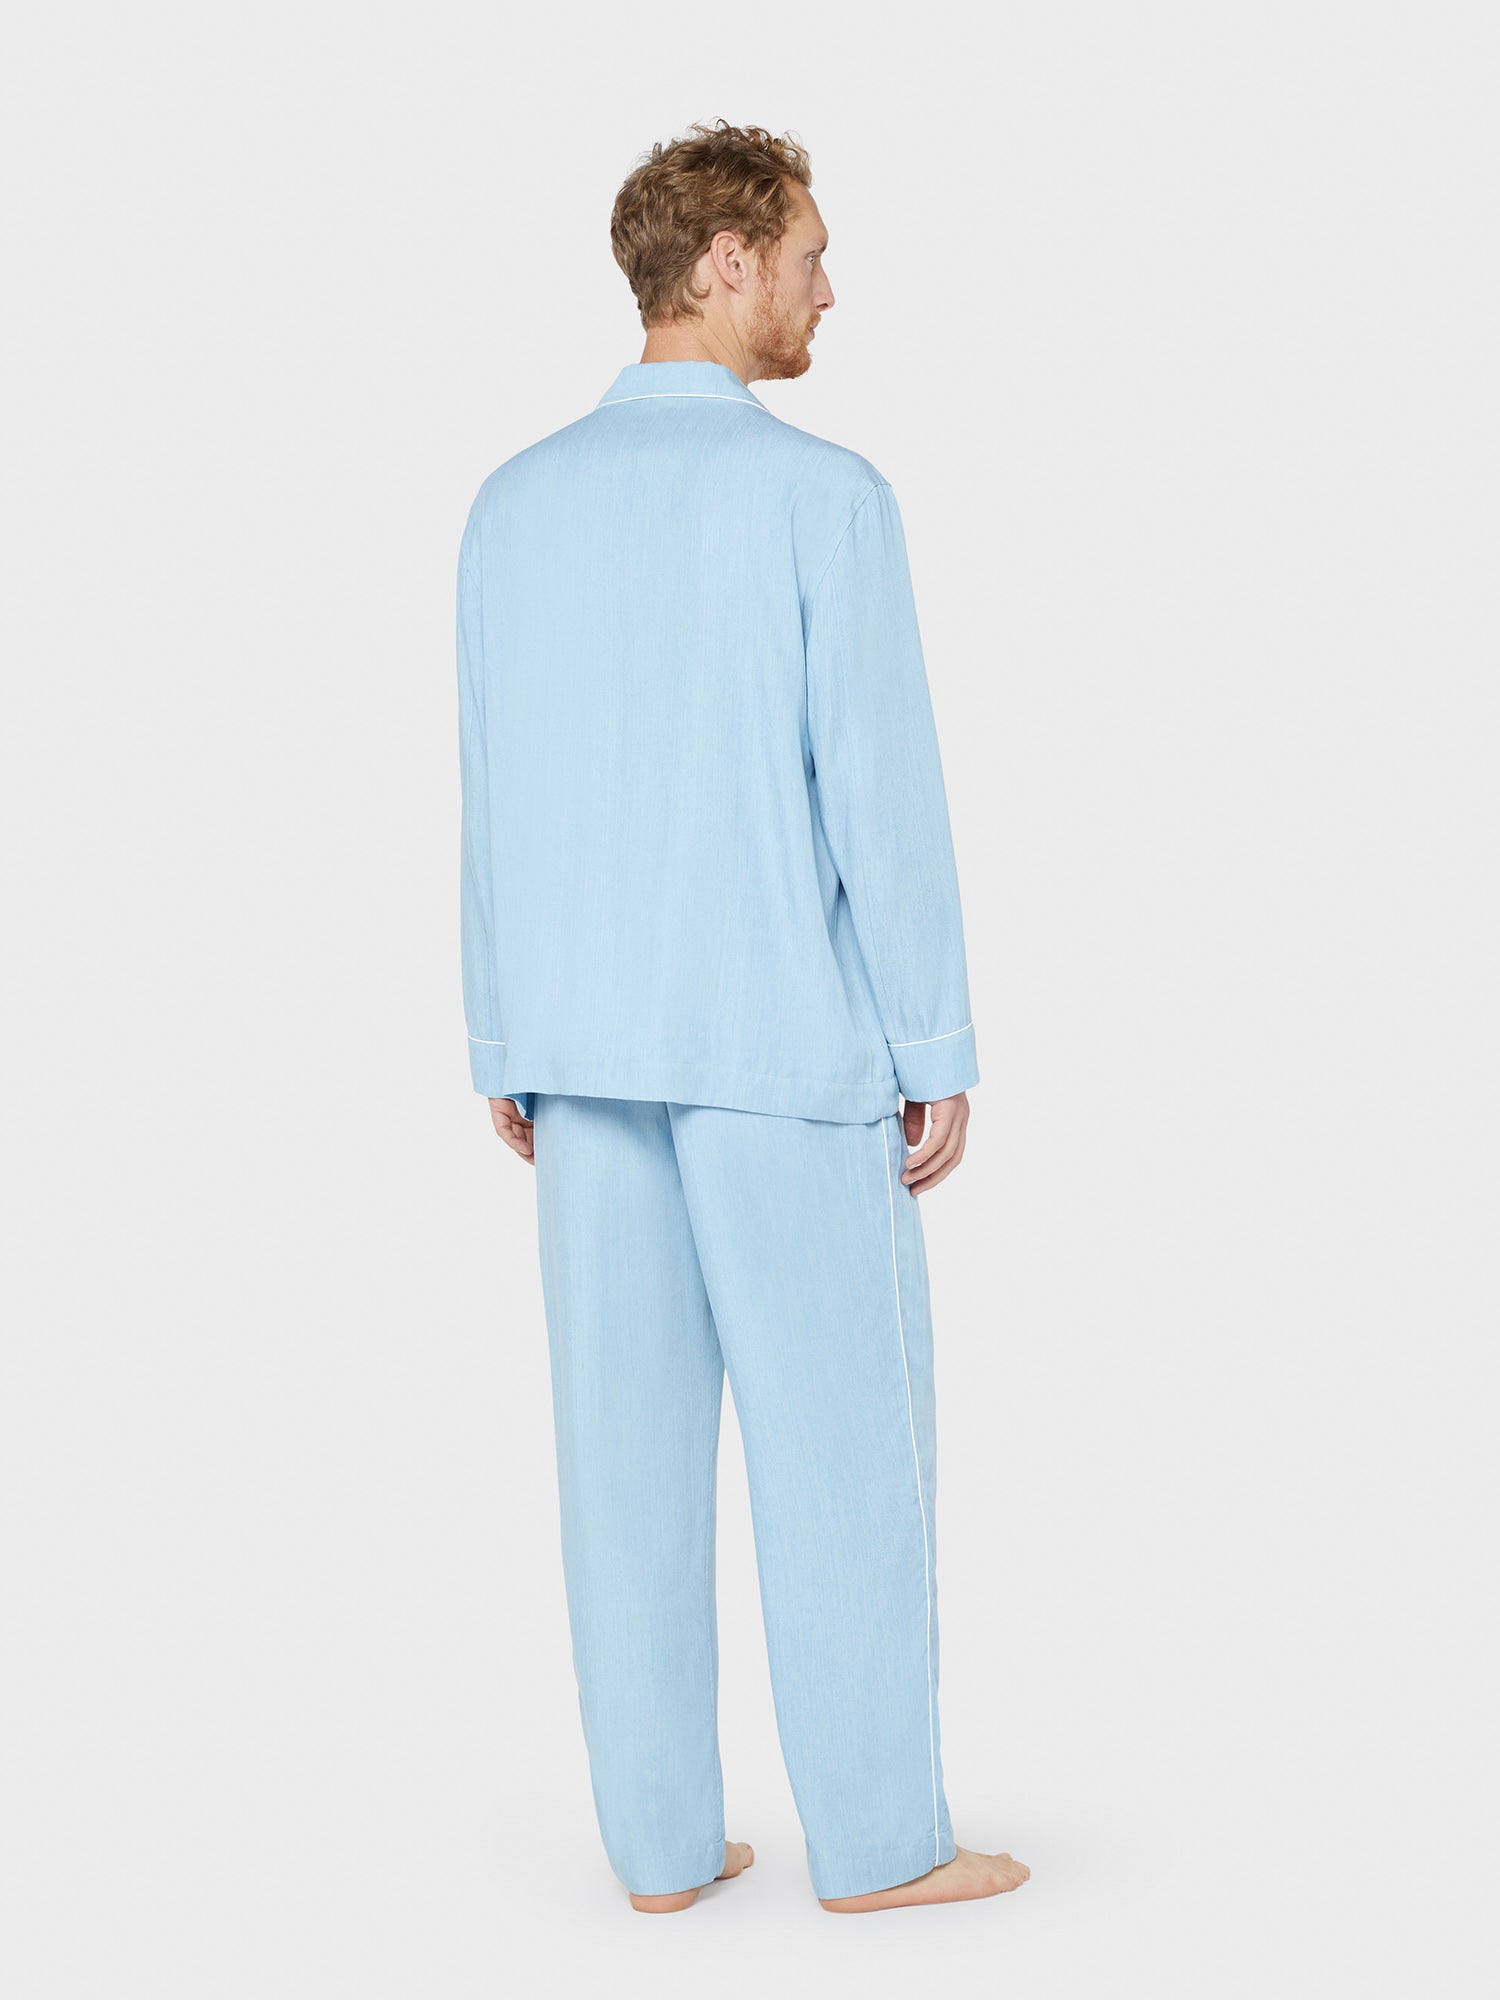 Caruso Menswear Abbigliamento Uomo Home suit sleepwear pigiama in tencel azzurro jeans indossato